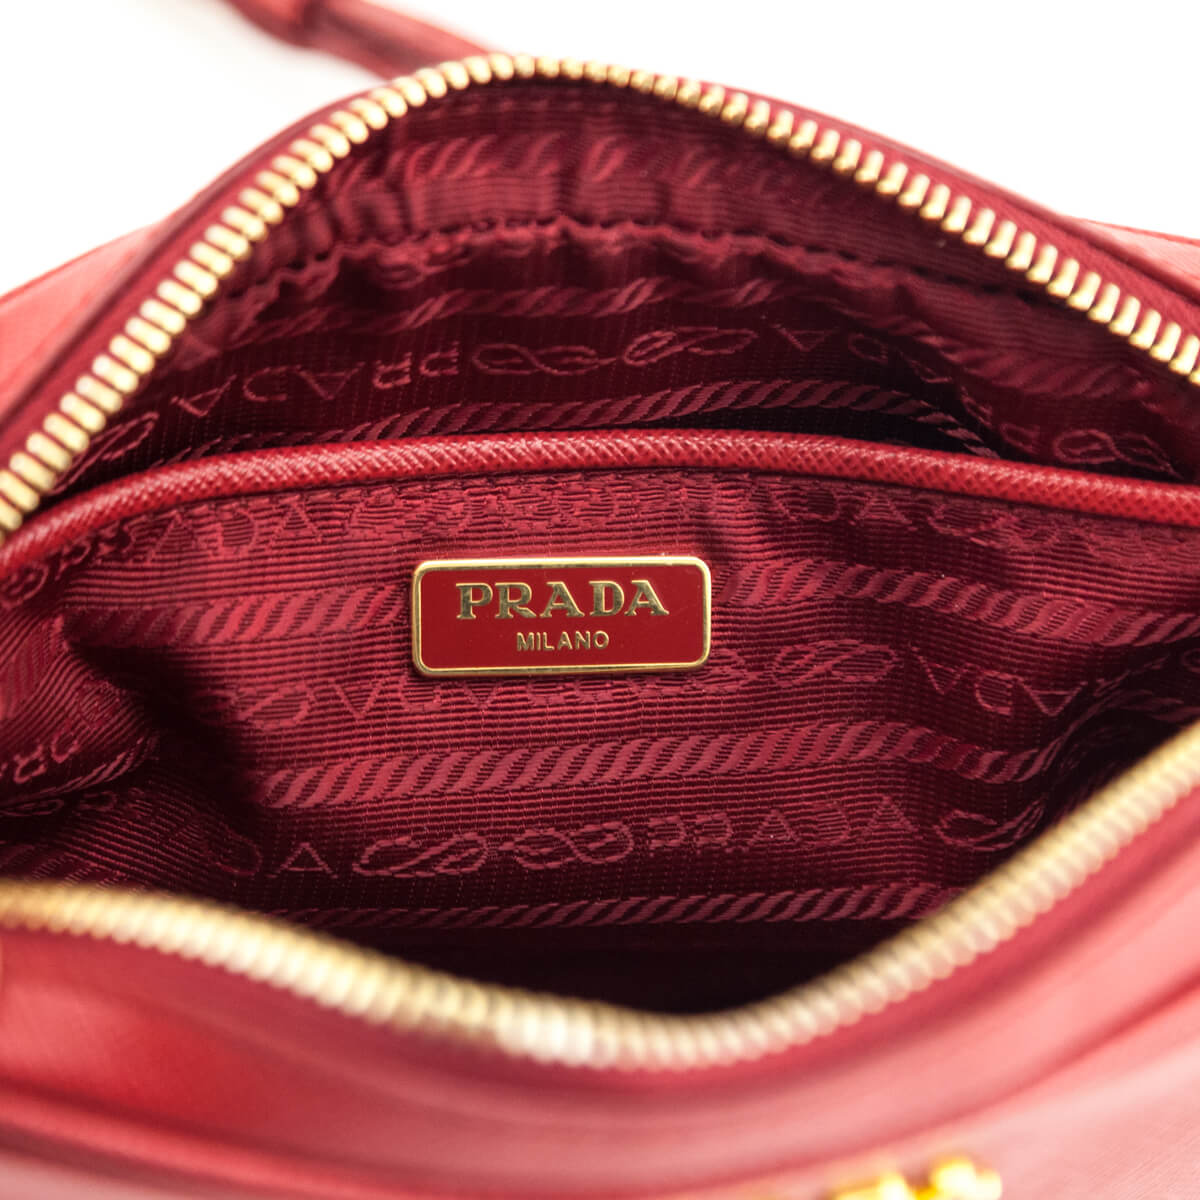 Prada Mini Red Camera Bag Review